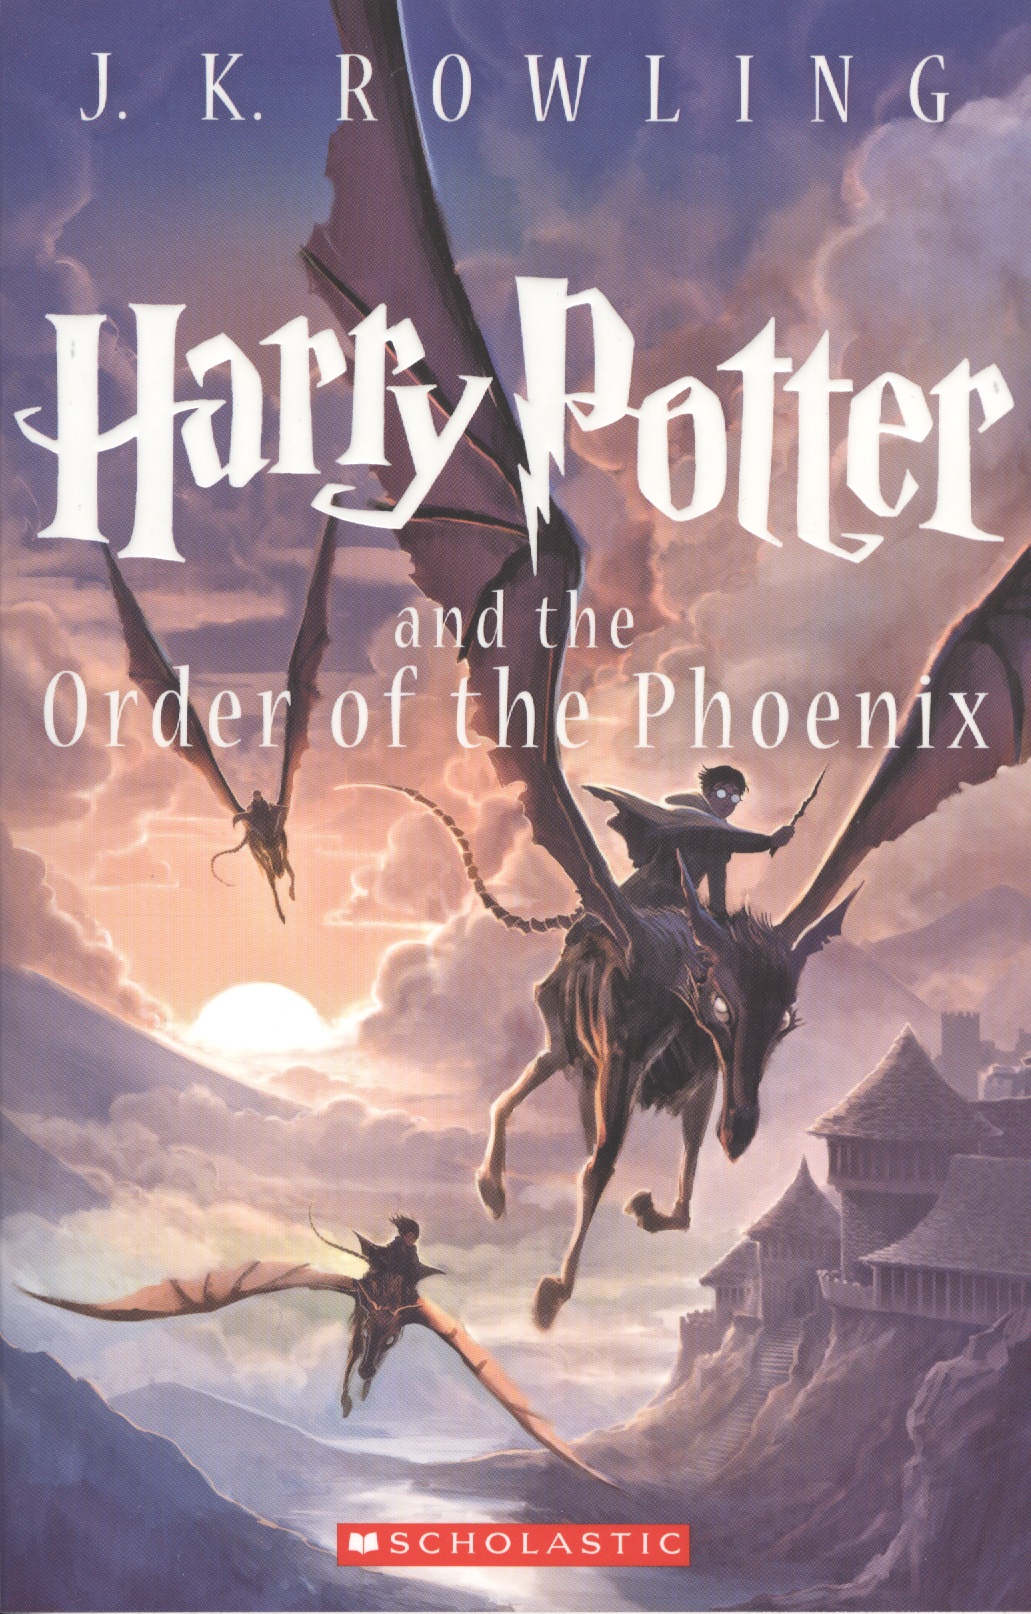 роулинг джоан кэтлин harry potter the complete collection Роулинг Джоан Кэтлин Harry Potter and the Order of the Phoenix